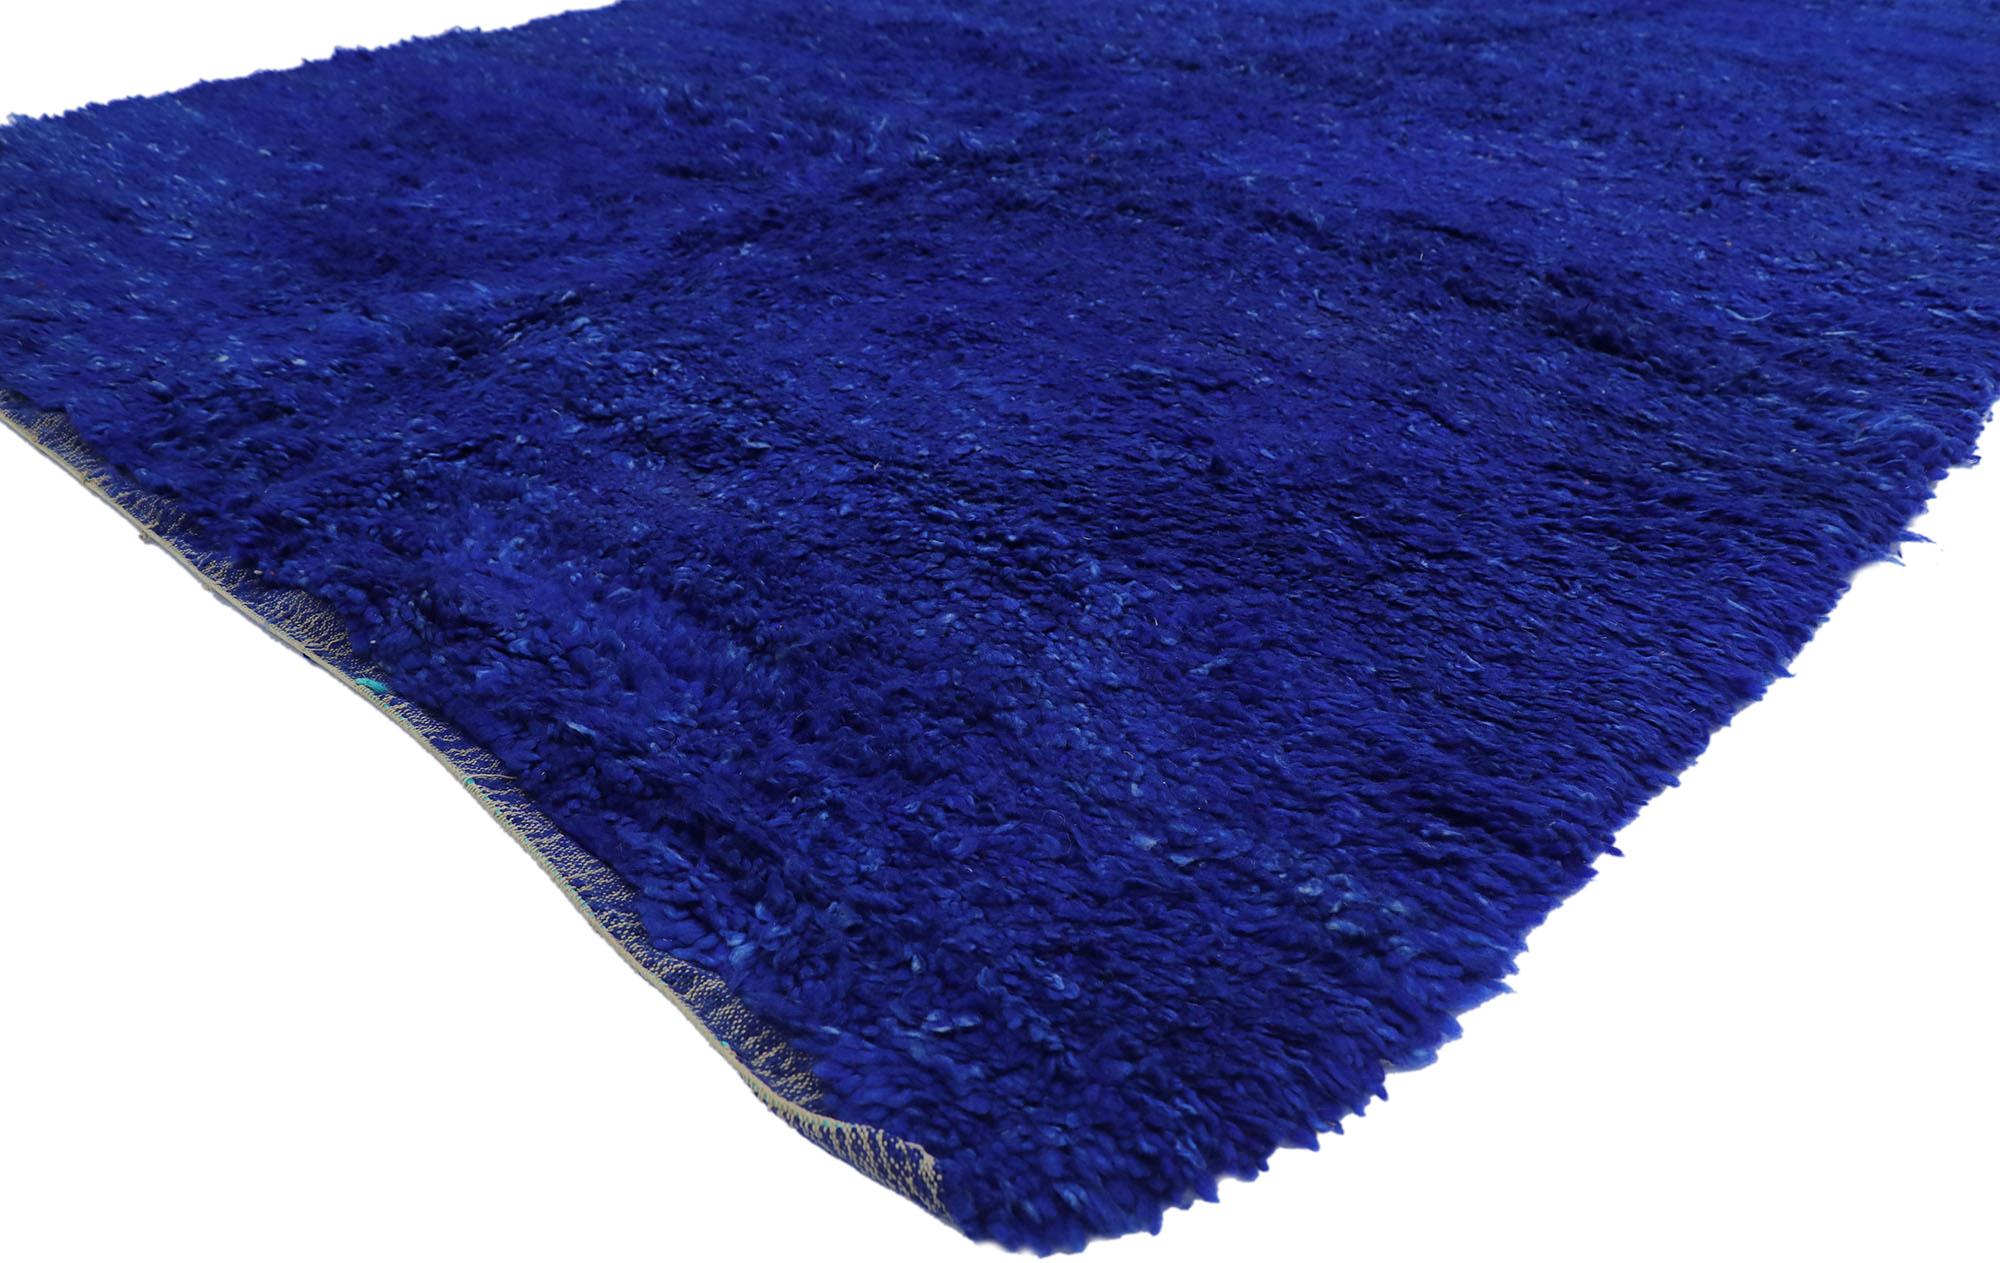 Le nomade douillet rencontre l'envoûtant bleu Marjorelle dans ce tapis marocain vintage Beni MGuild en laine nouée à la main. Préparez-vous à être transporté dans un endroit paisible et captivant avec ce tapis marocain vintage apparaissant comme